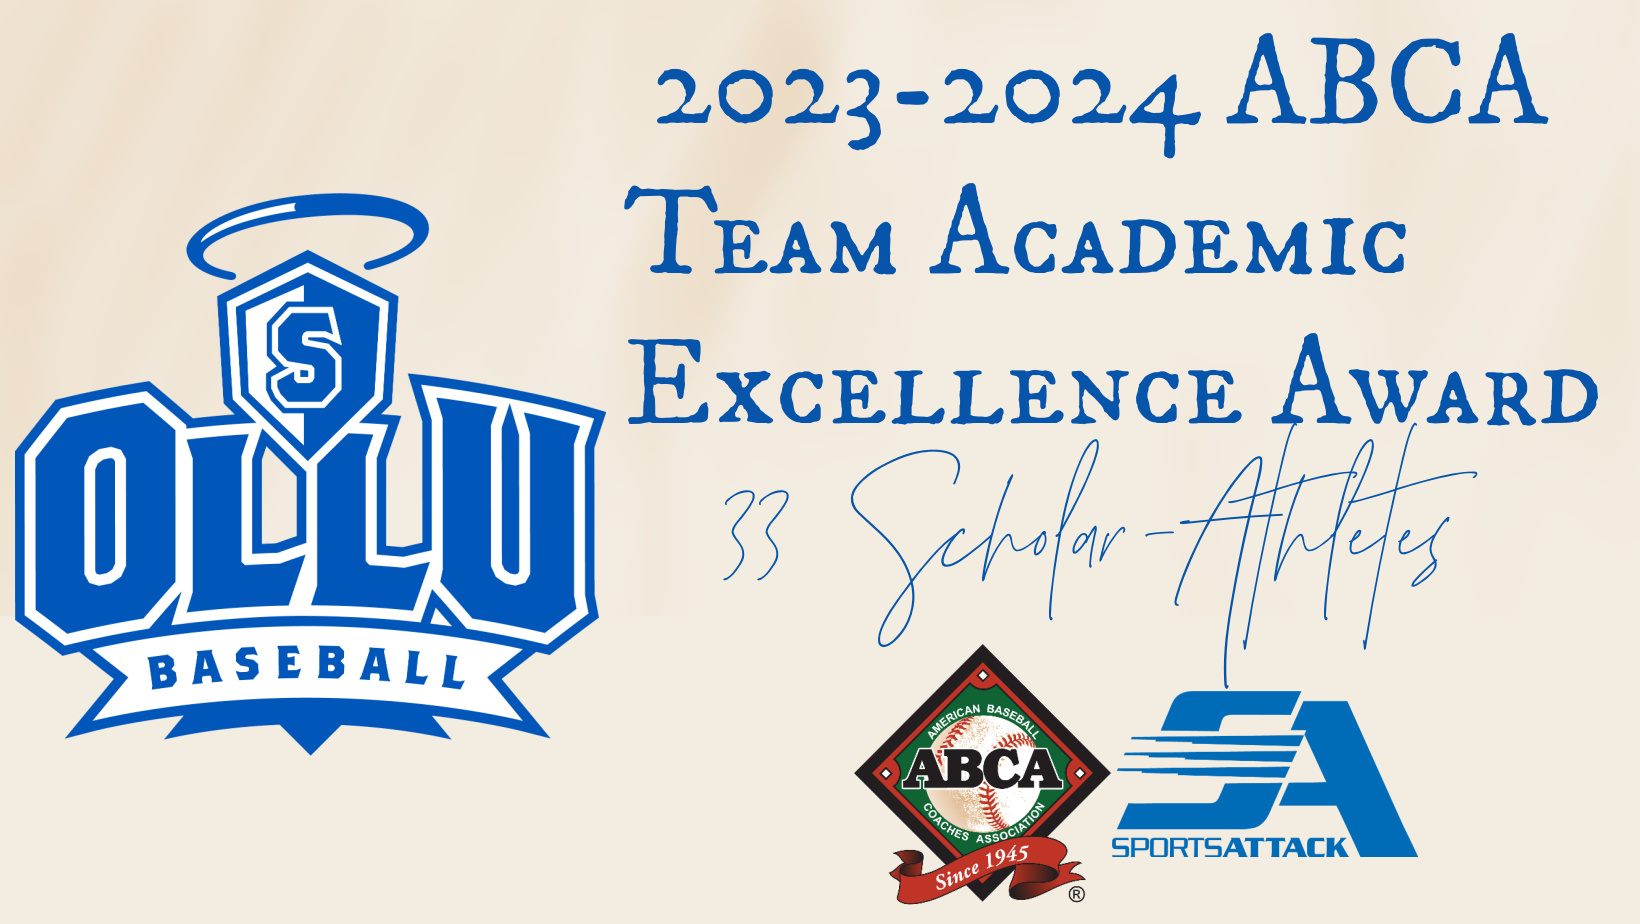 OLLU Baseball Earns Third Straight ABCA Team Academic Excellence Award